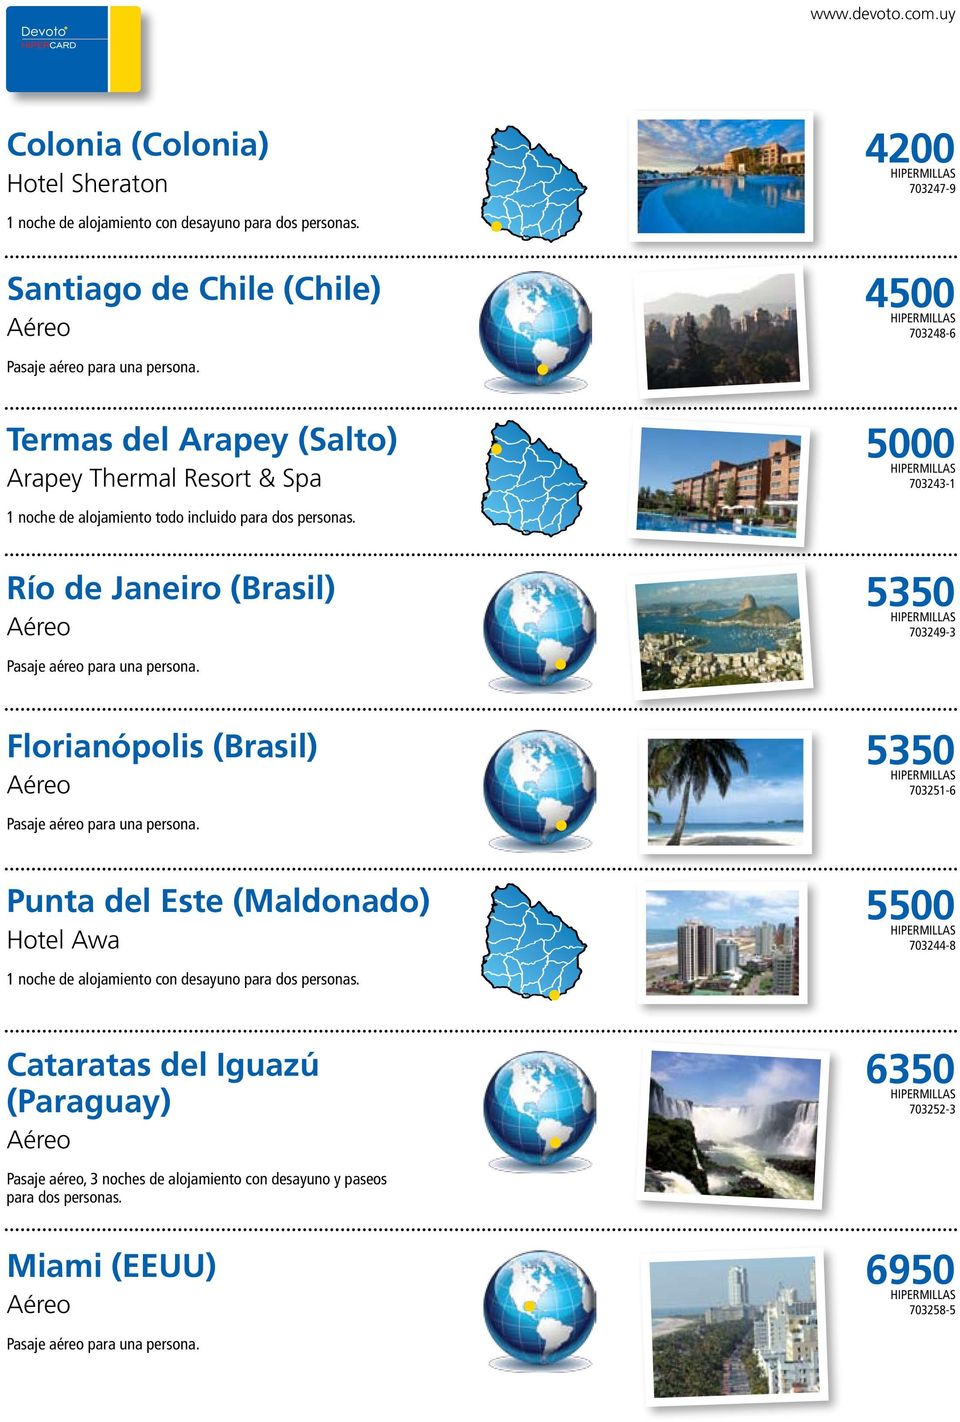 del Arapey (Salto) Arapey Thermal Resort & Spa 5000 703243-1 1 noche de alojamiento todo incluido Río de Janeiro (Brasil) 5350